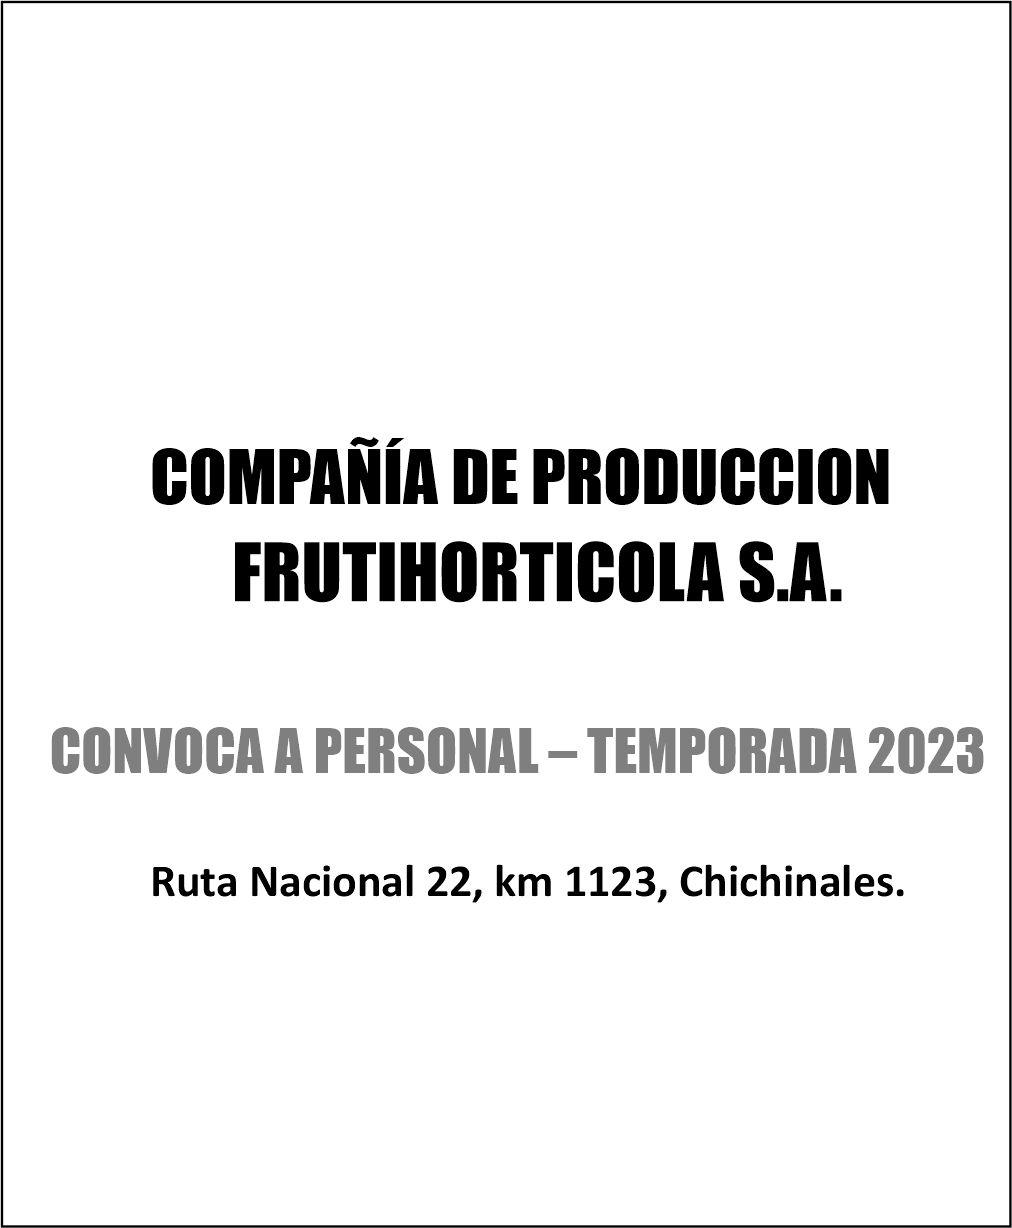 COMPAÑÍA DE PRODUCCION FRUTIHORTICOLA S.A. CONVOCA A PERSONAL PARA TEMPORADA 2023